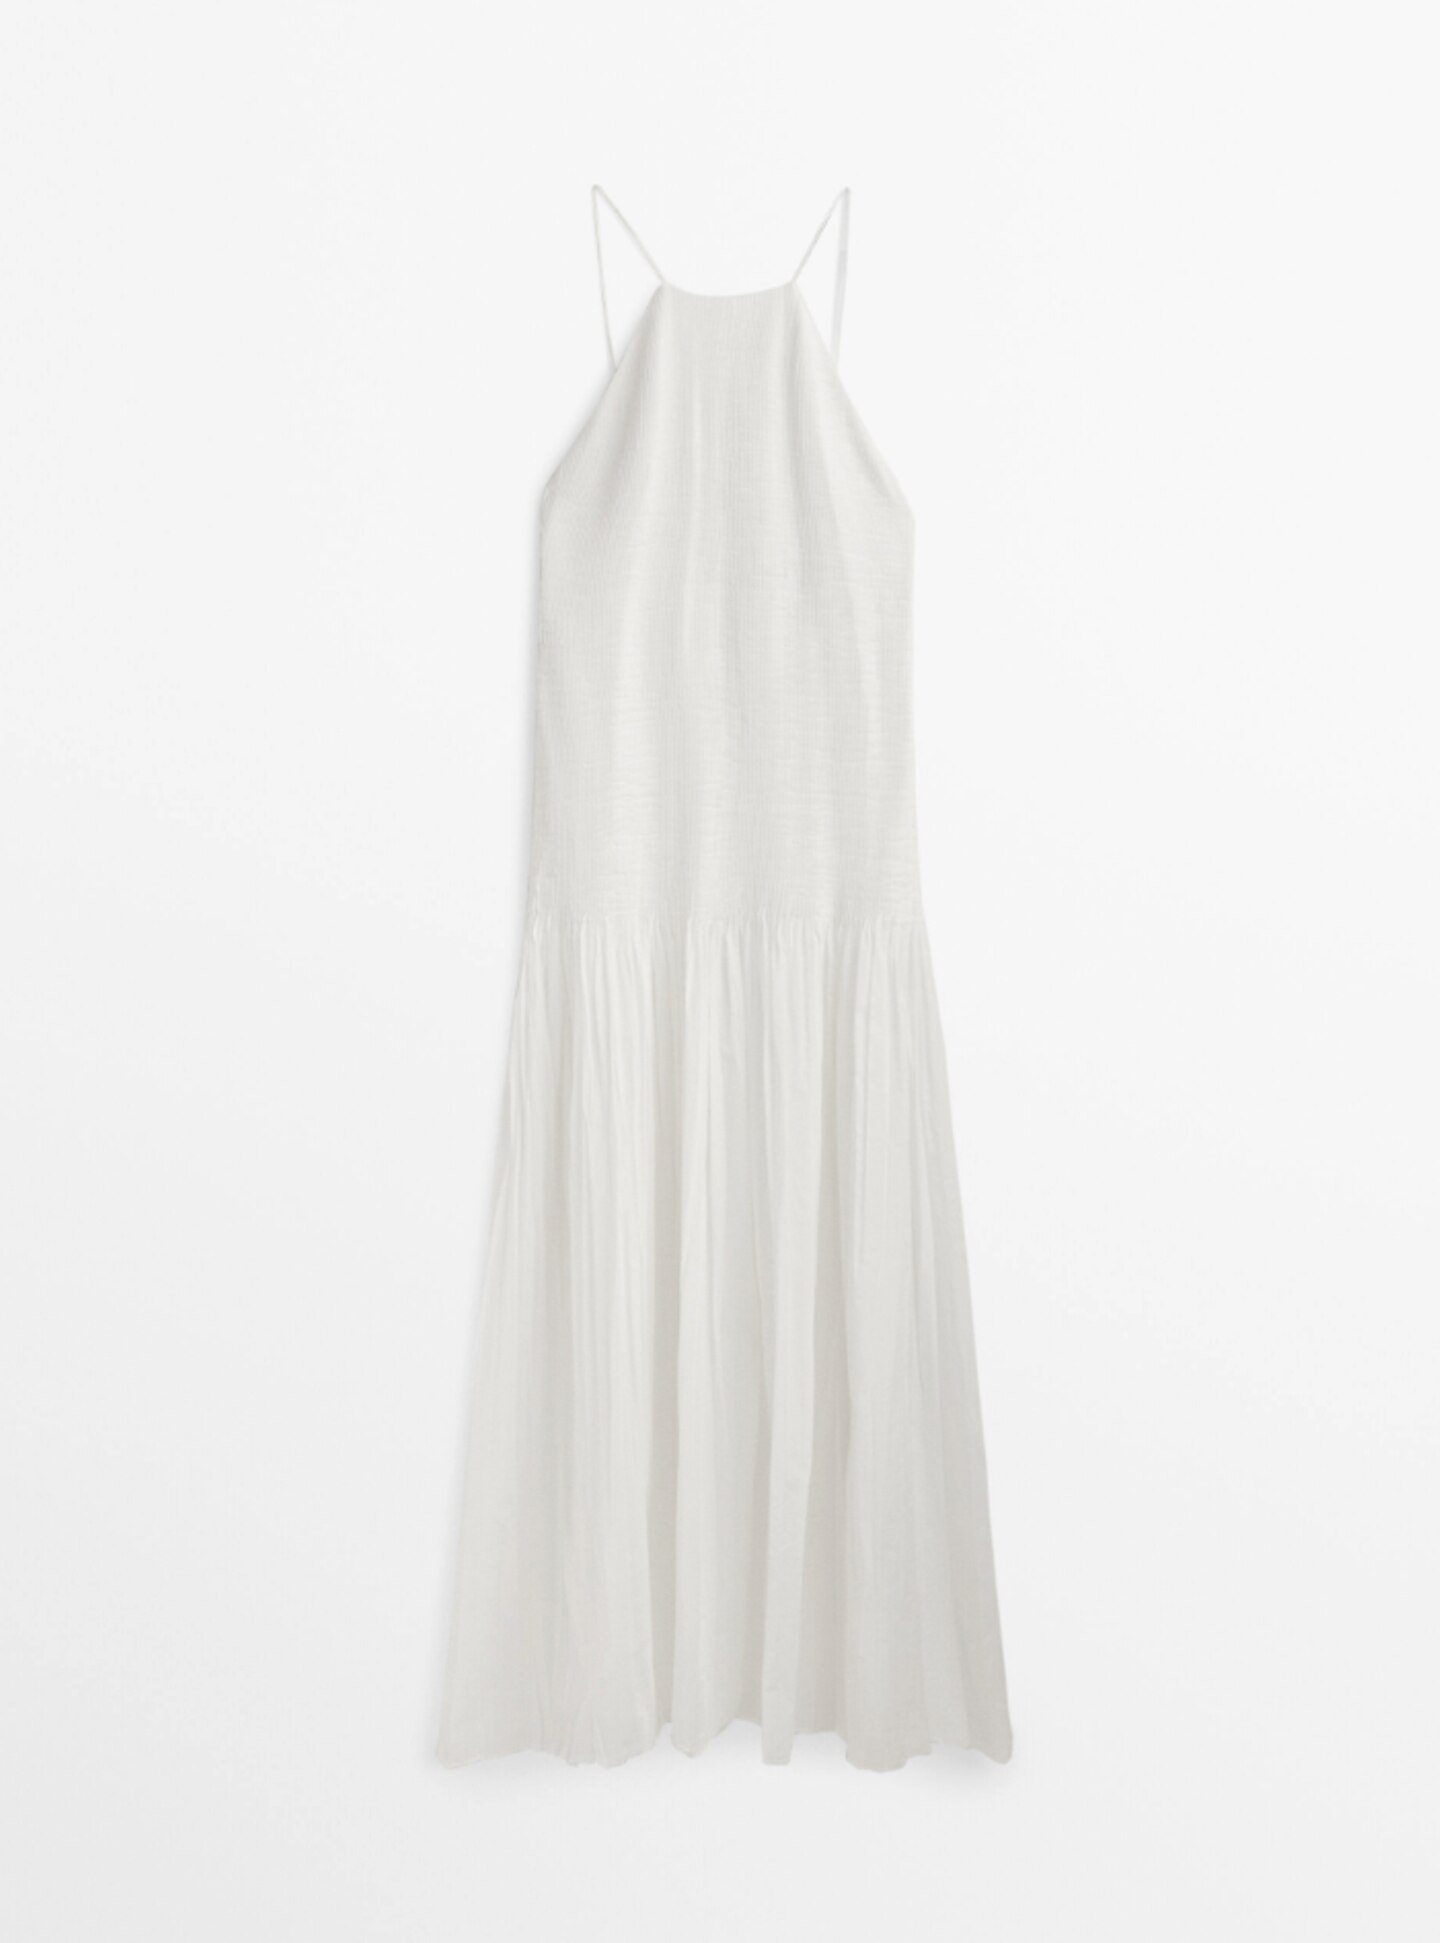 Zarte Träger und ein angenehmer Baumwoll-Stoff machen dieses Kleid zu etwas Besonderem. Auch der angedeutete, hochgeschlossene Neckholder-Schnitt stellt einen tollen Kontrast zum freiliegenden Rücken. Von Massimo Dutti, kostet ca. 200 Euro.